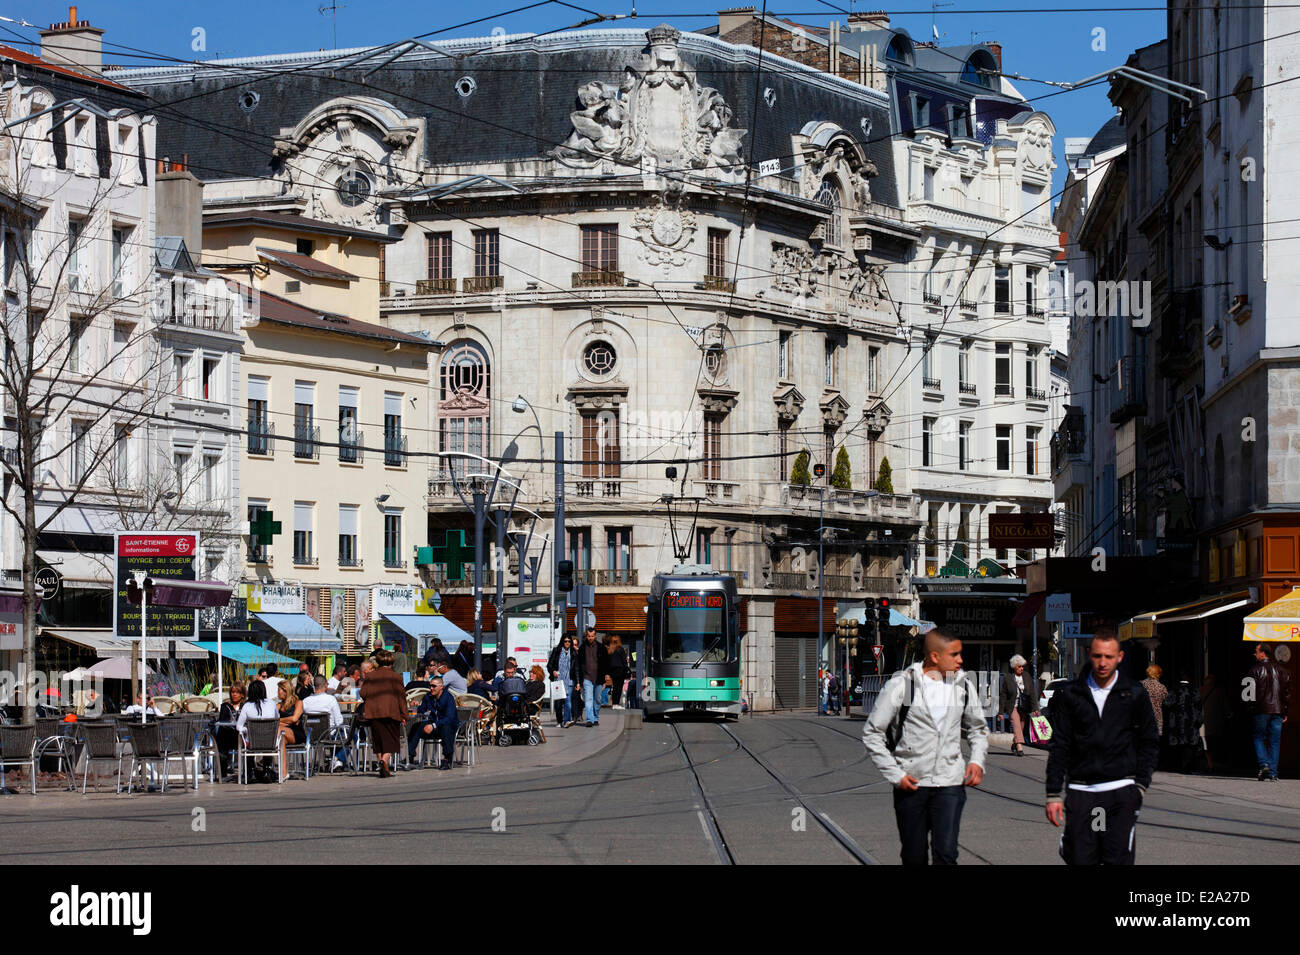 France, Loire, Saint Etienne, Place du Peuple (People's Square), tram Stock Photo